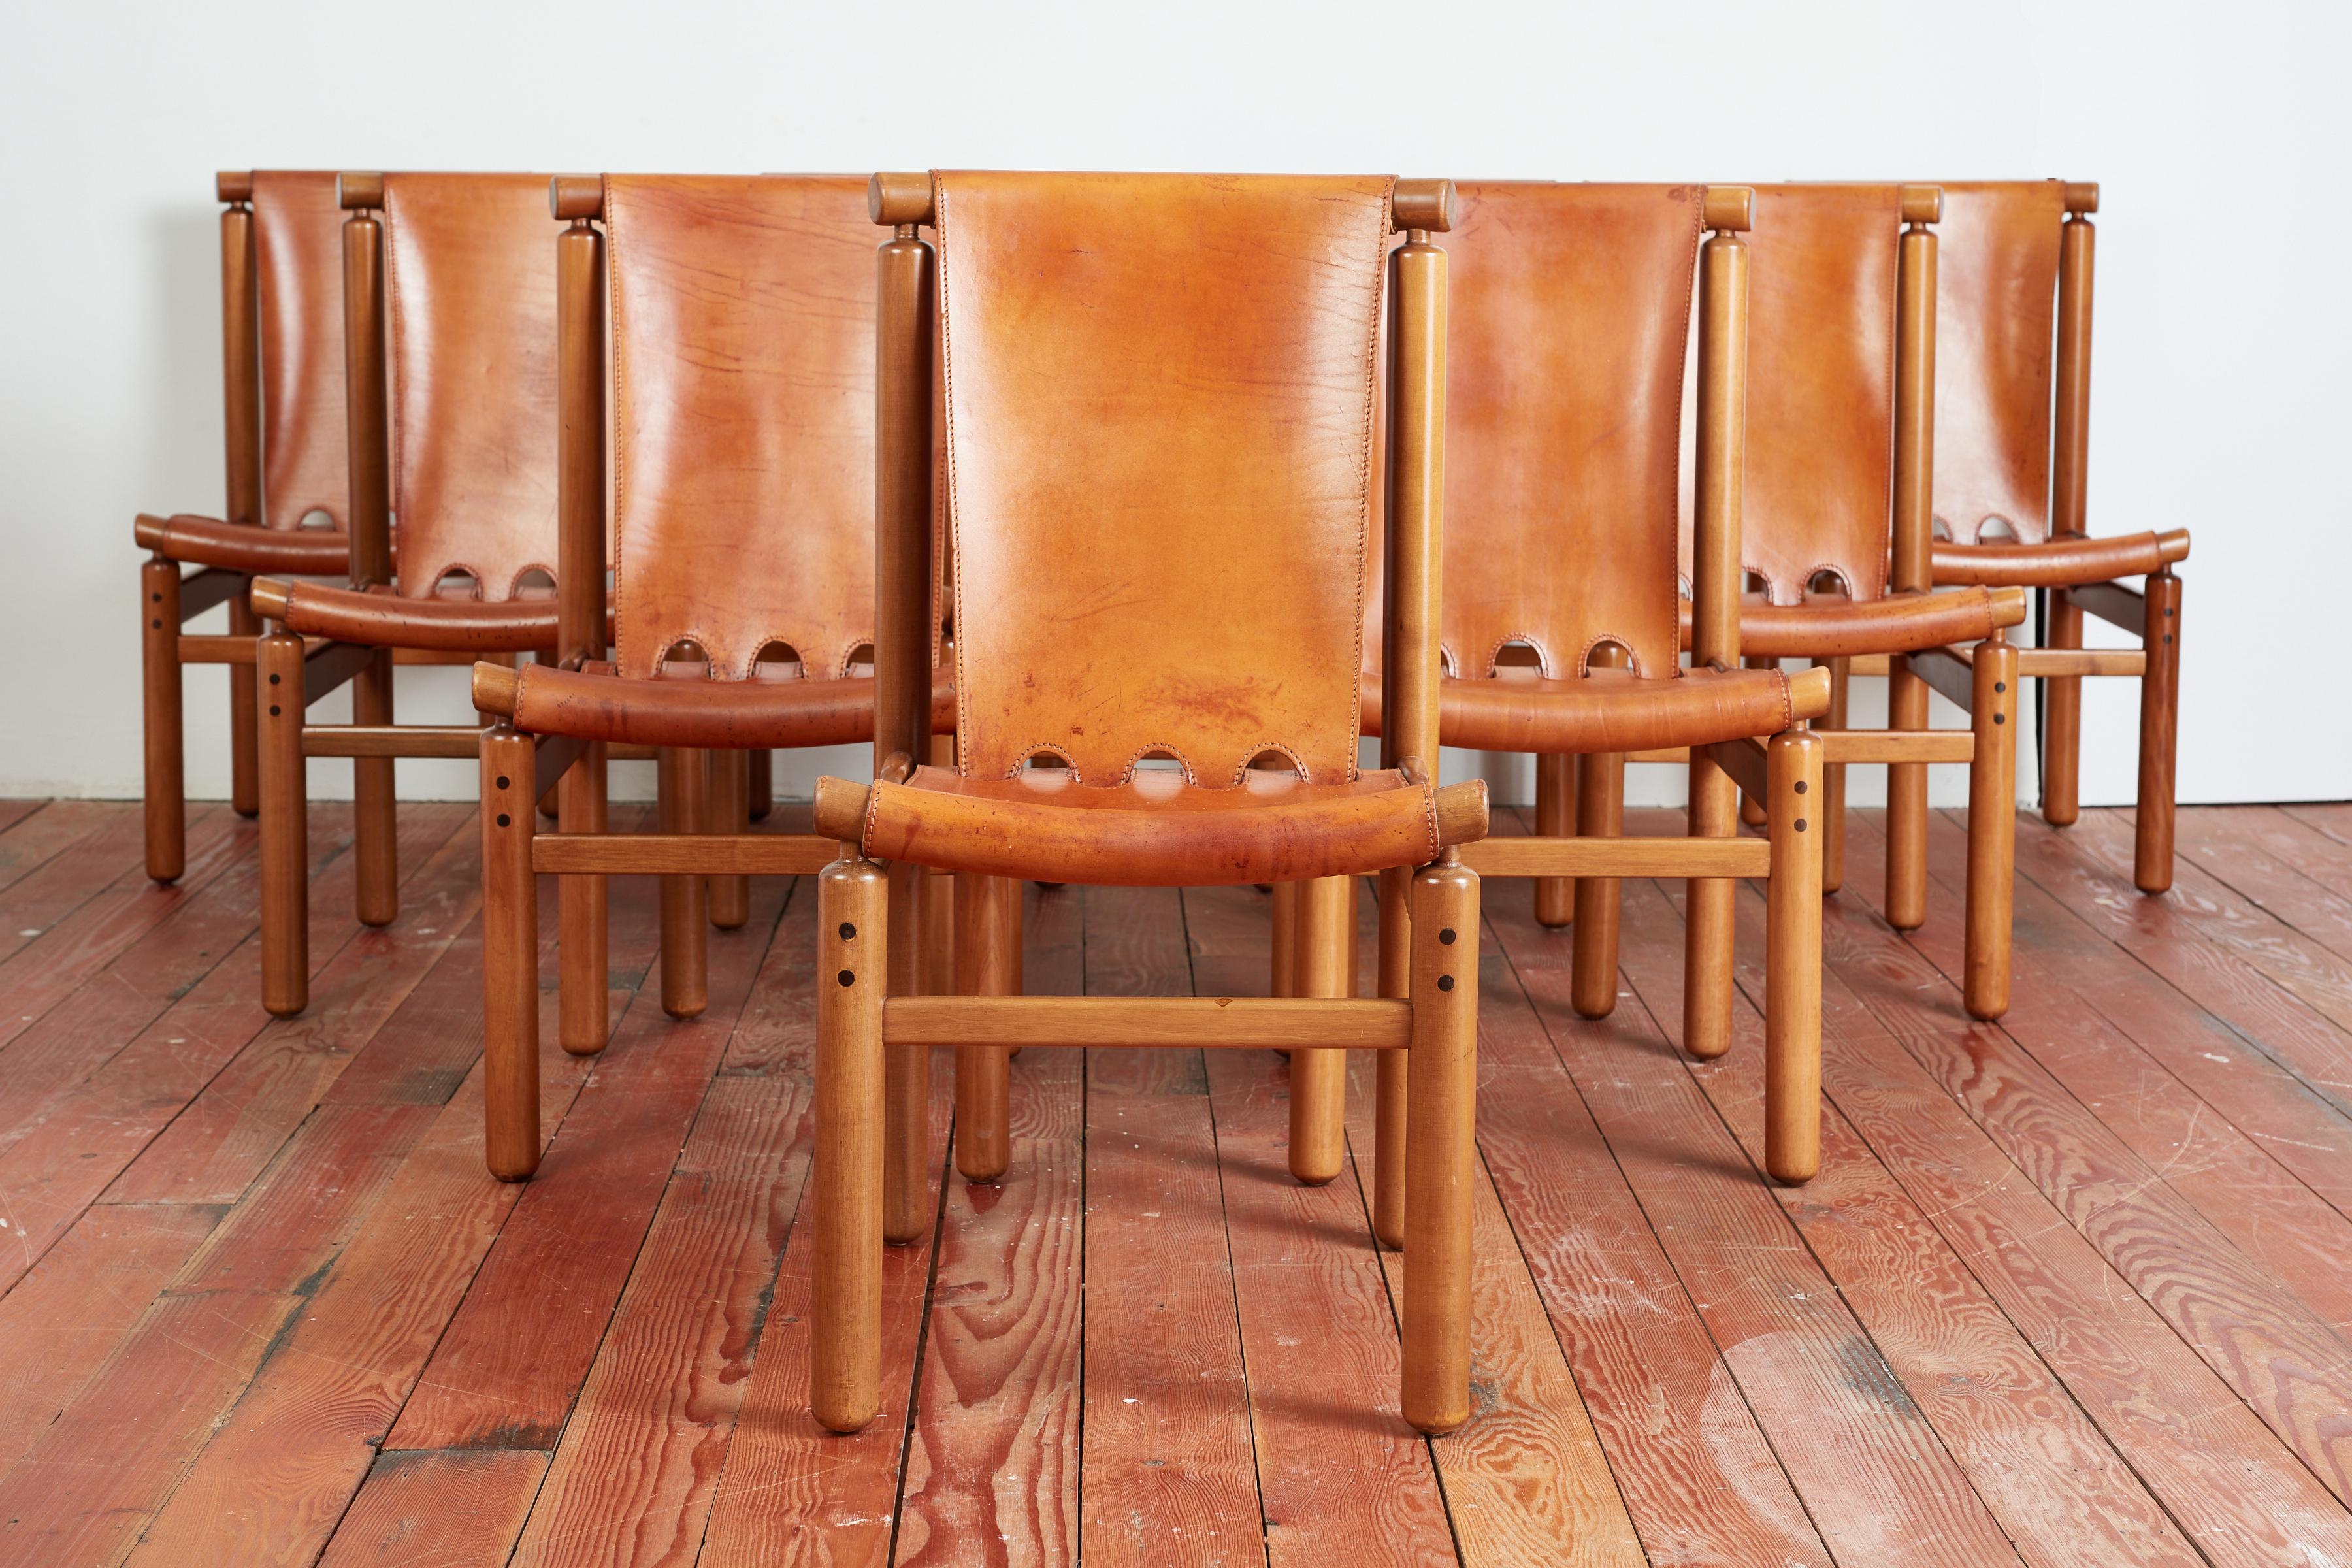 Incroyable et rare ensemble de 10 chaises de salle à manger italiennes en cuir par Ilmari Tapiovaara pour La Permanente Mobili Cantù, vers les années 1950.
Merveilleux cuir de selle épais et patiné sur des cadres en hêtre massif de forme